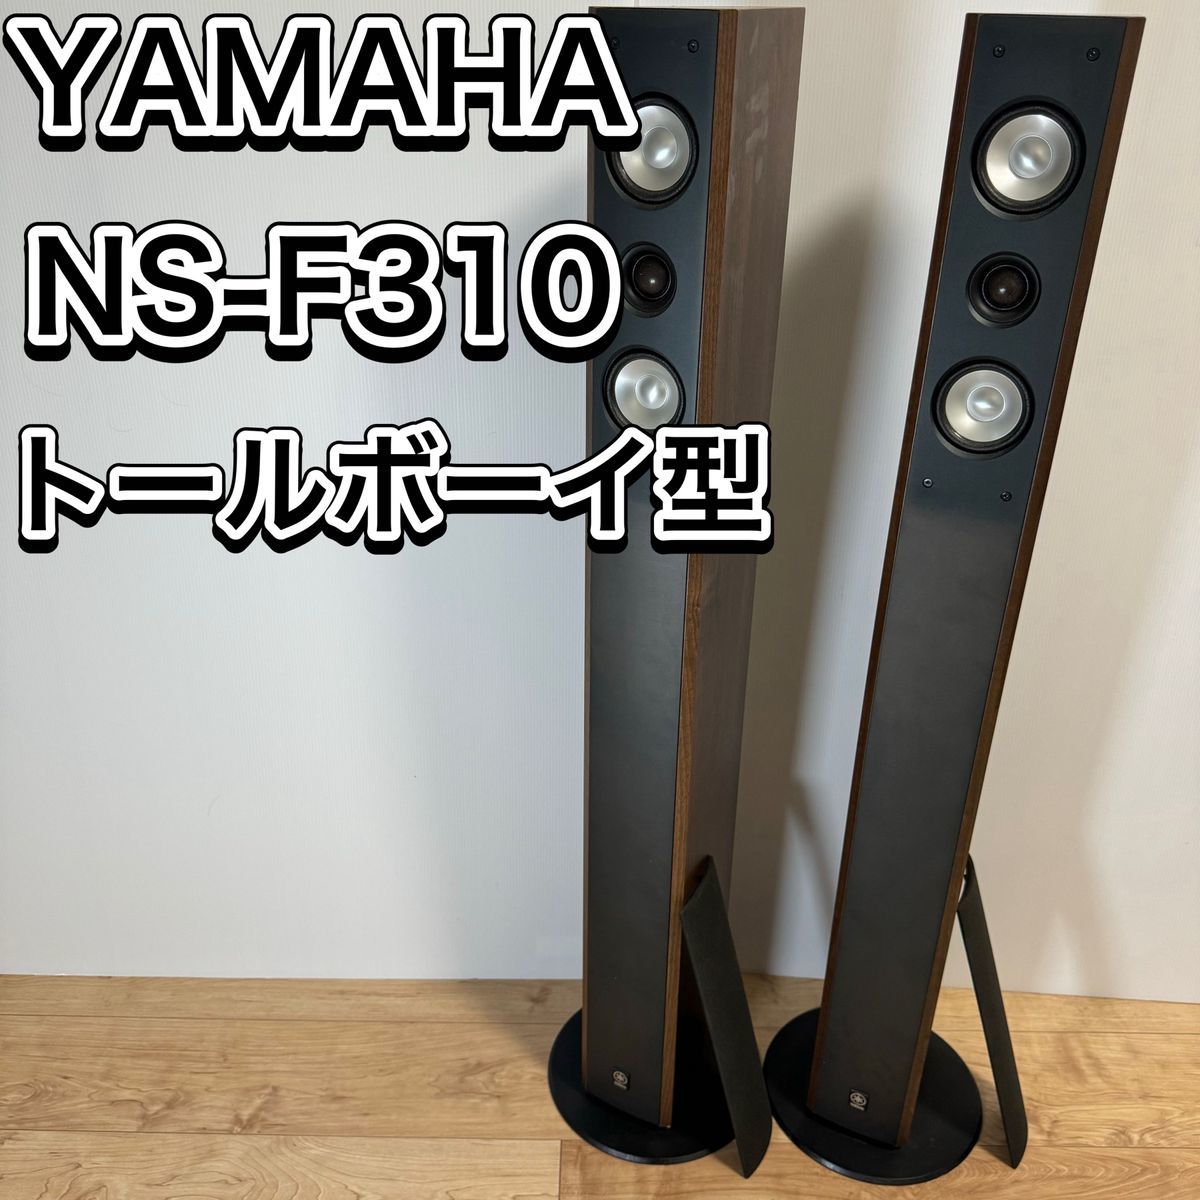 1473 美品 YAMAHA ヤマハ NS- F210 トールボーイスピーカー-